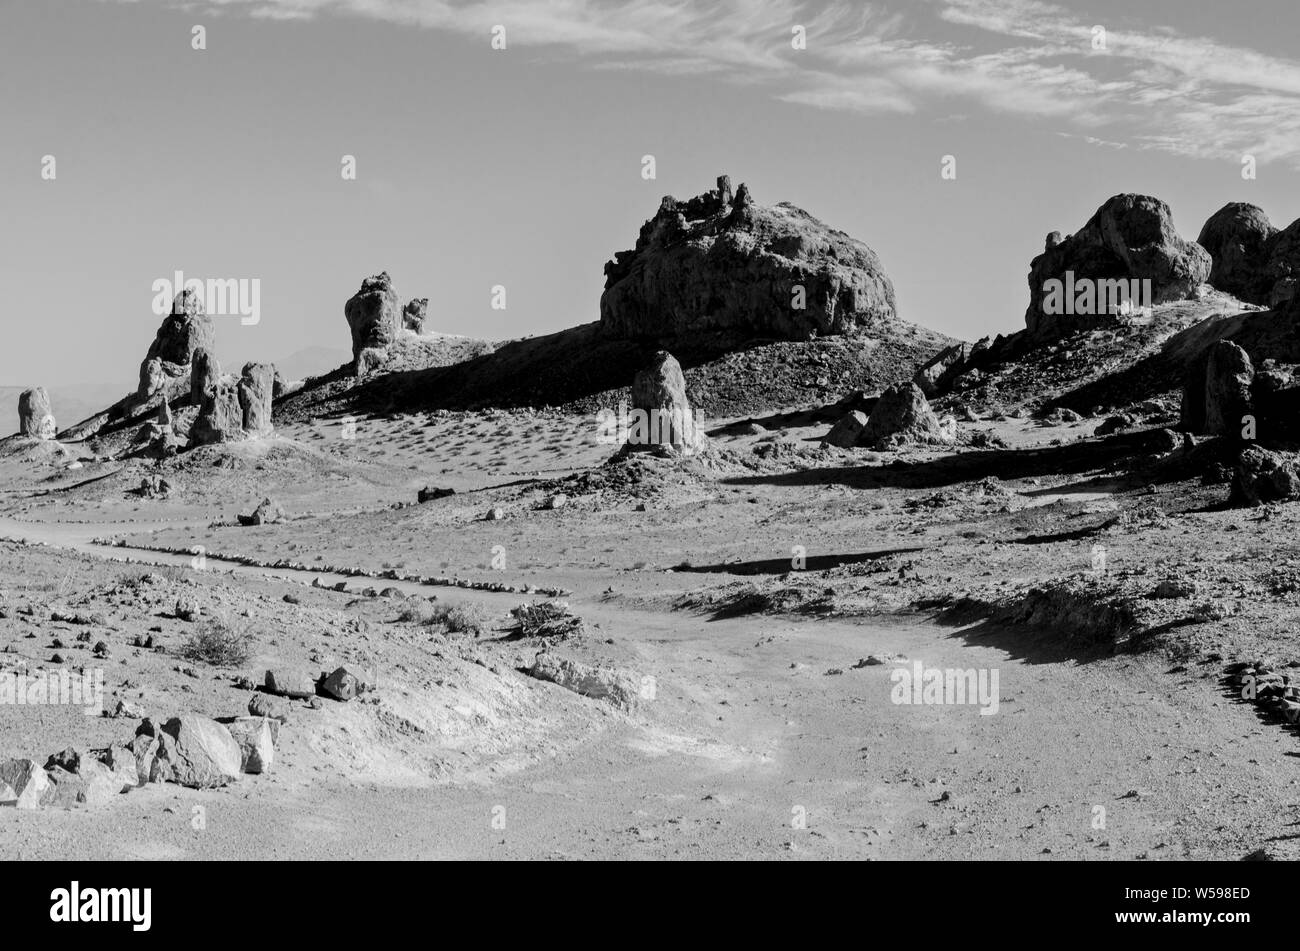 Le formazioni rocciose che gettano ombre, strada sterrata che conduce attraverso l'arido deserto desolato terreno. In bianco e nero. Foto Stock